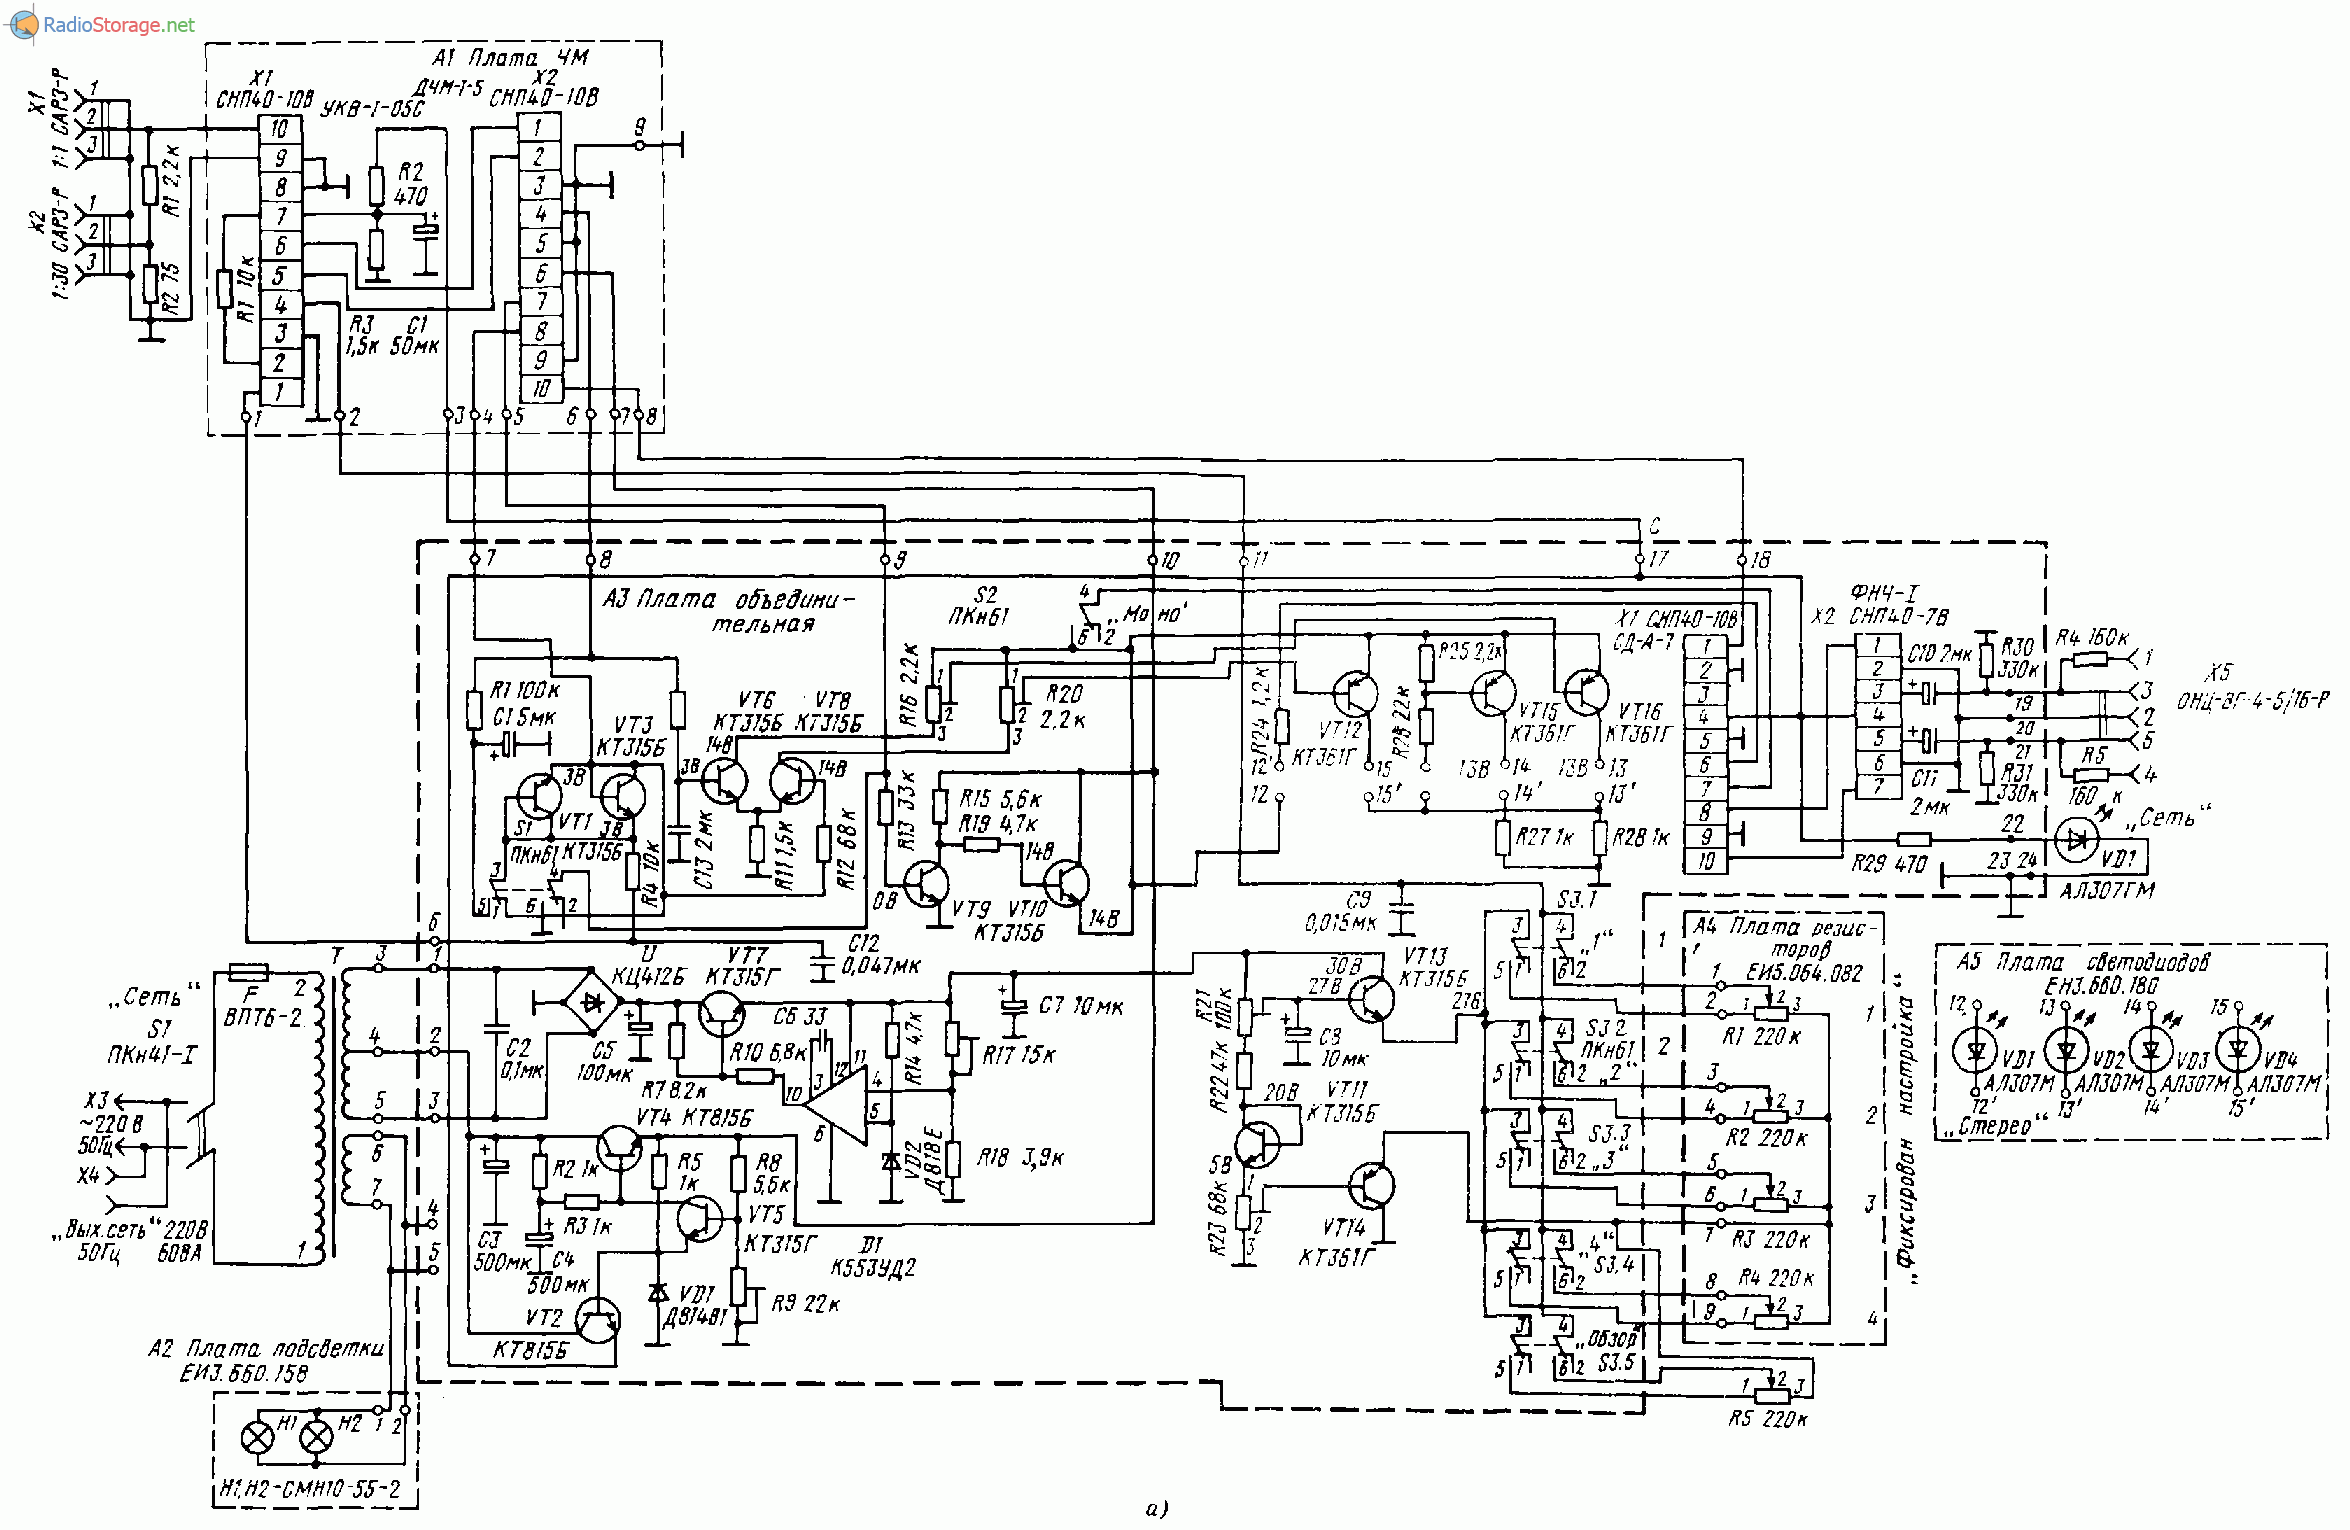 ОДА-102 стерео (тюнер, магнитофон, предусилитель, УМЗЧ), схема